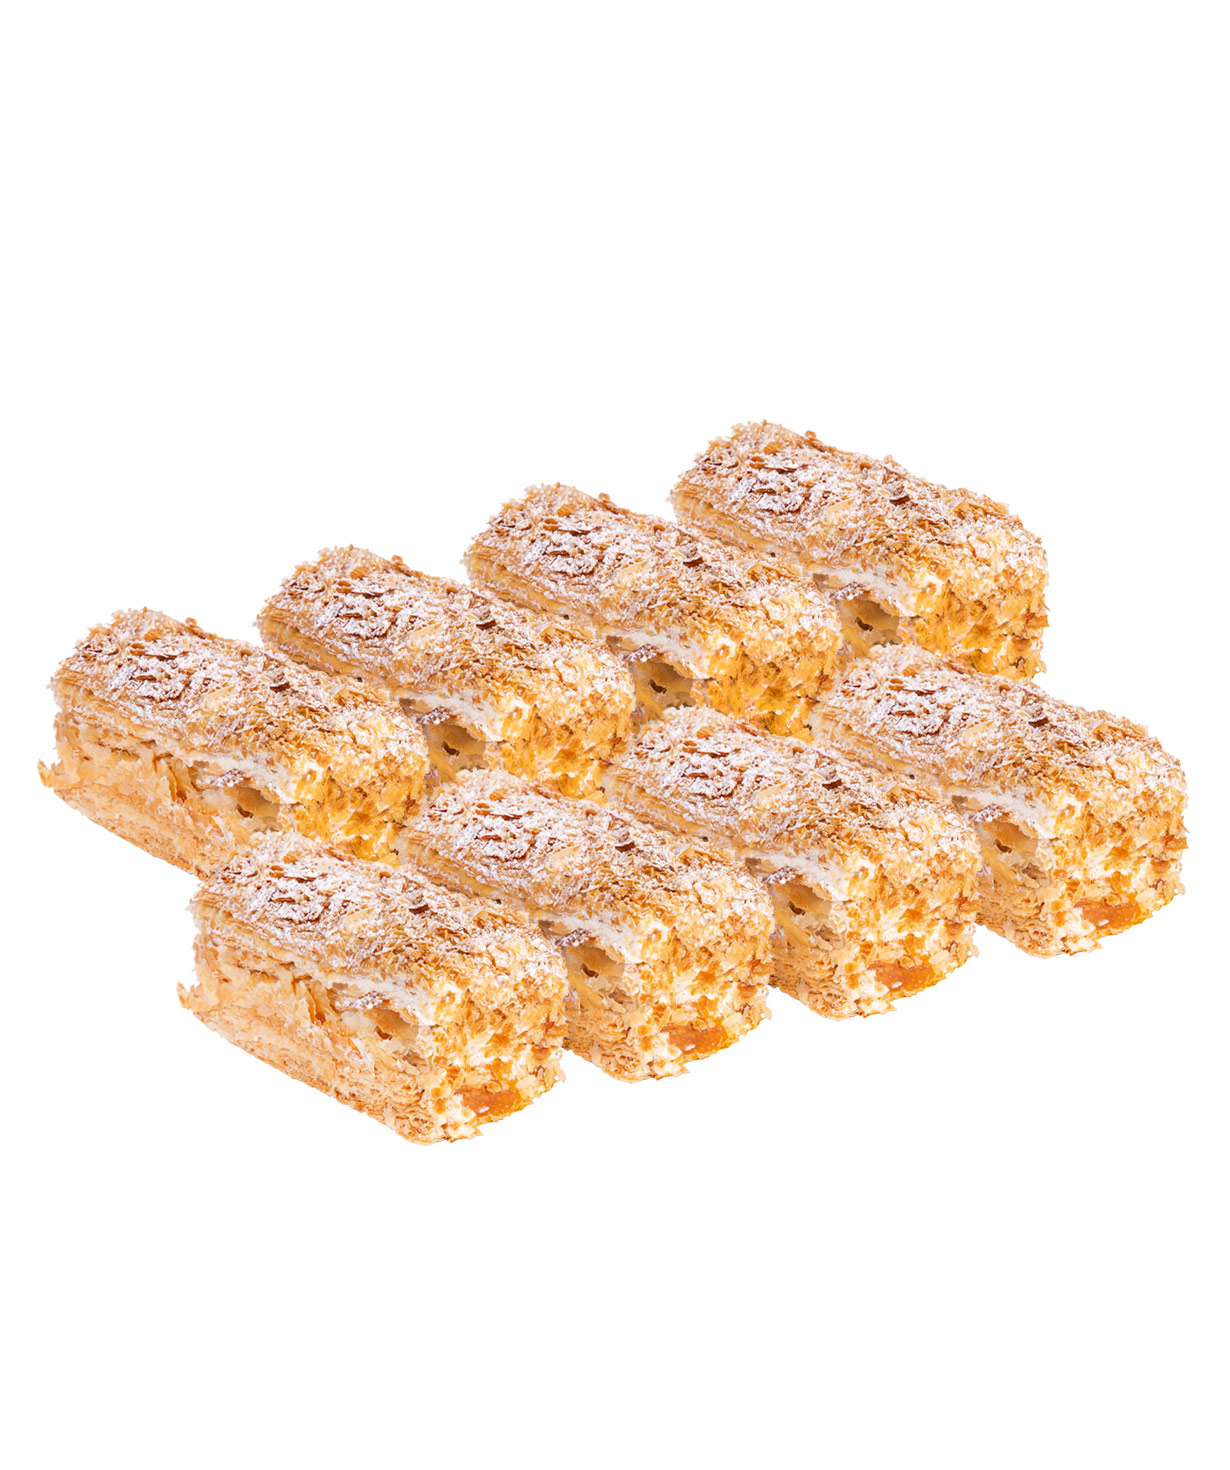 Pastry `Parma` Napoleon 8 pieces